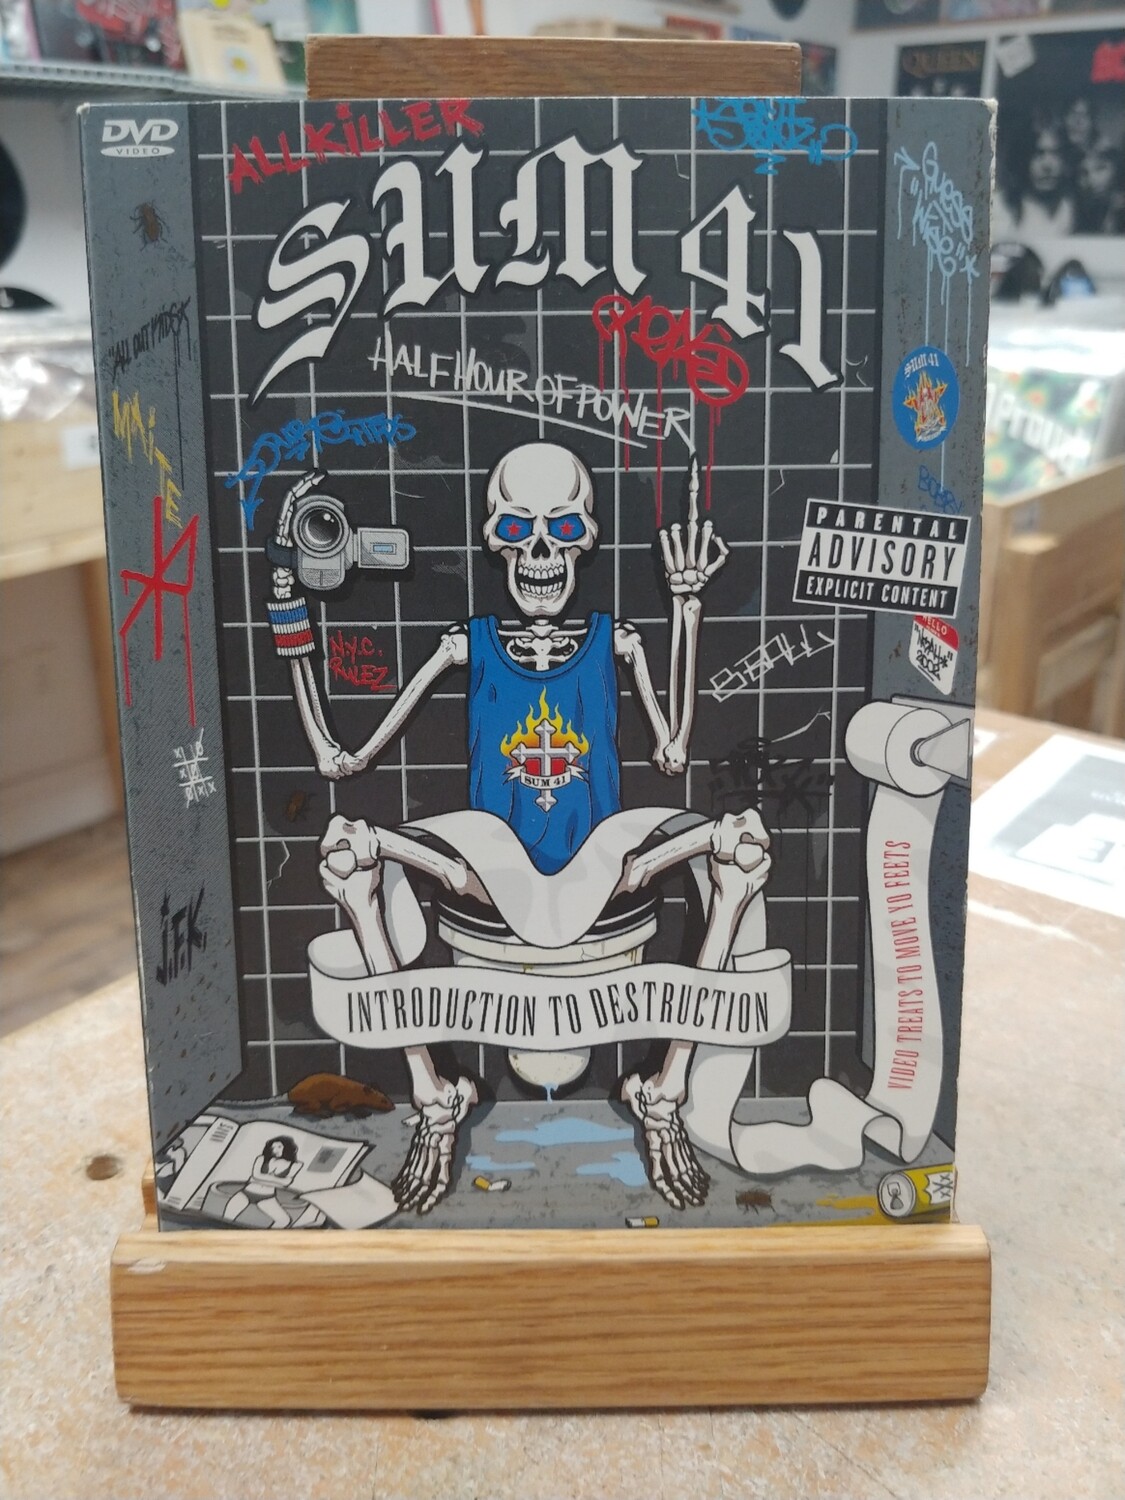 Sum 41 - Introduction to destruction (DVD)